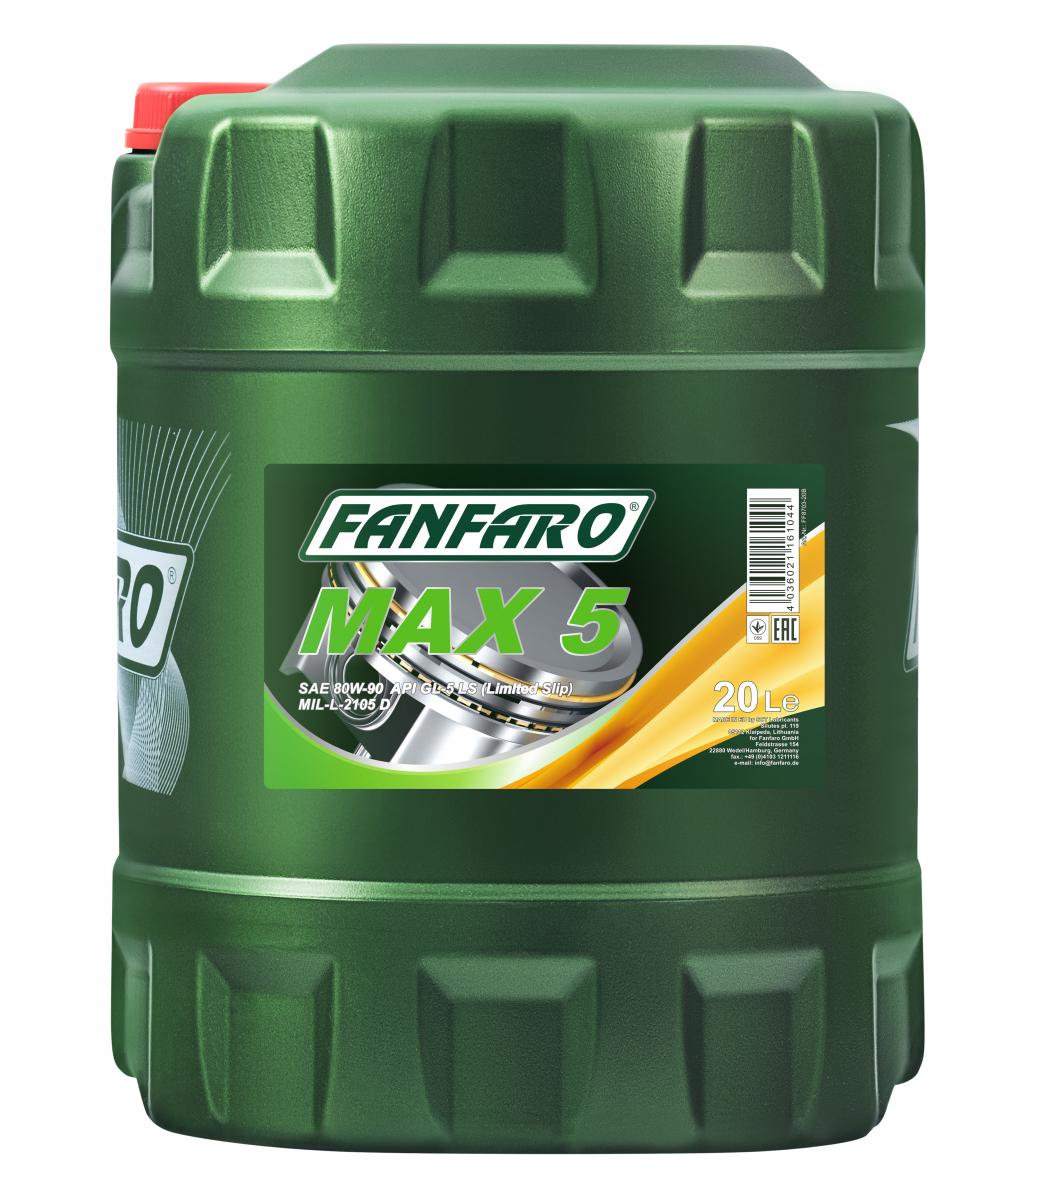 20 Liter FANFARO MAX 5 80W-90 API GL-5 LS Getriebeöl MIL L 2105 D